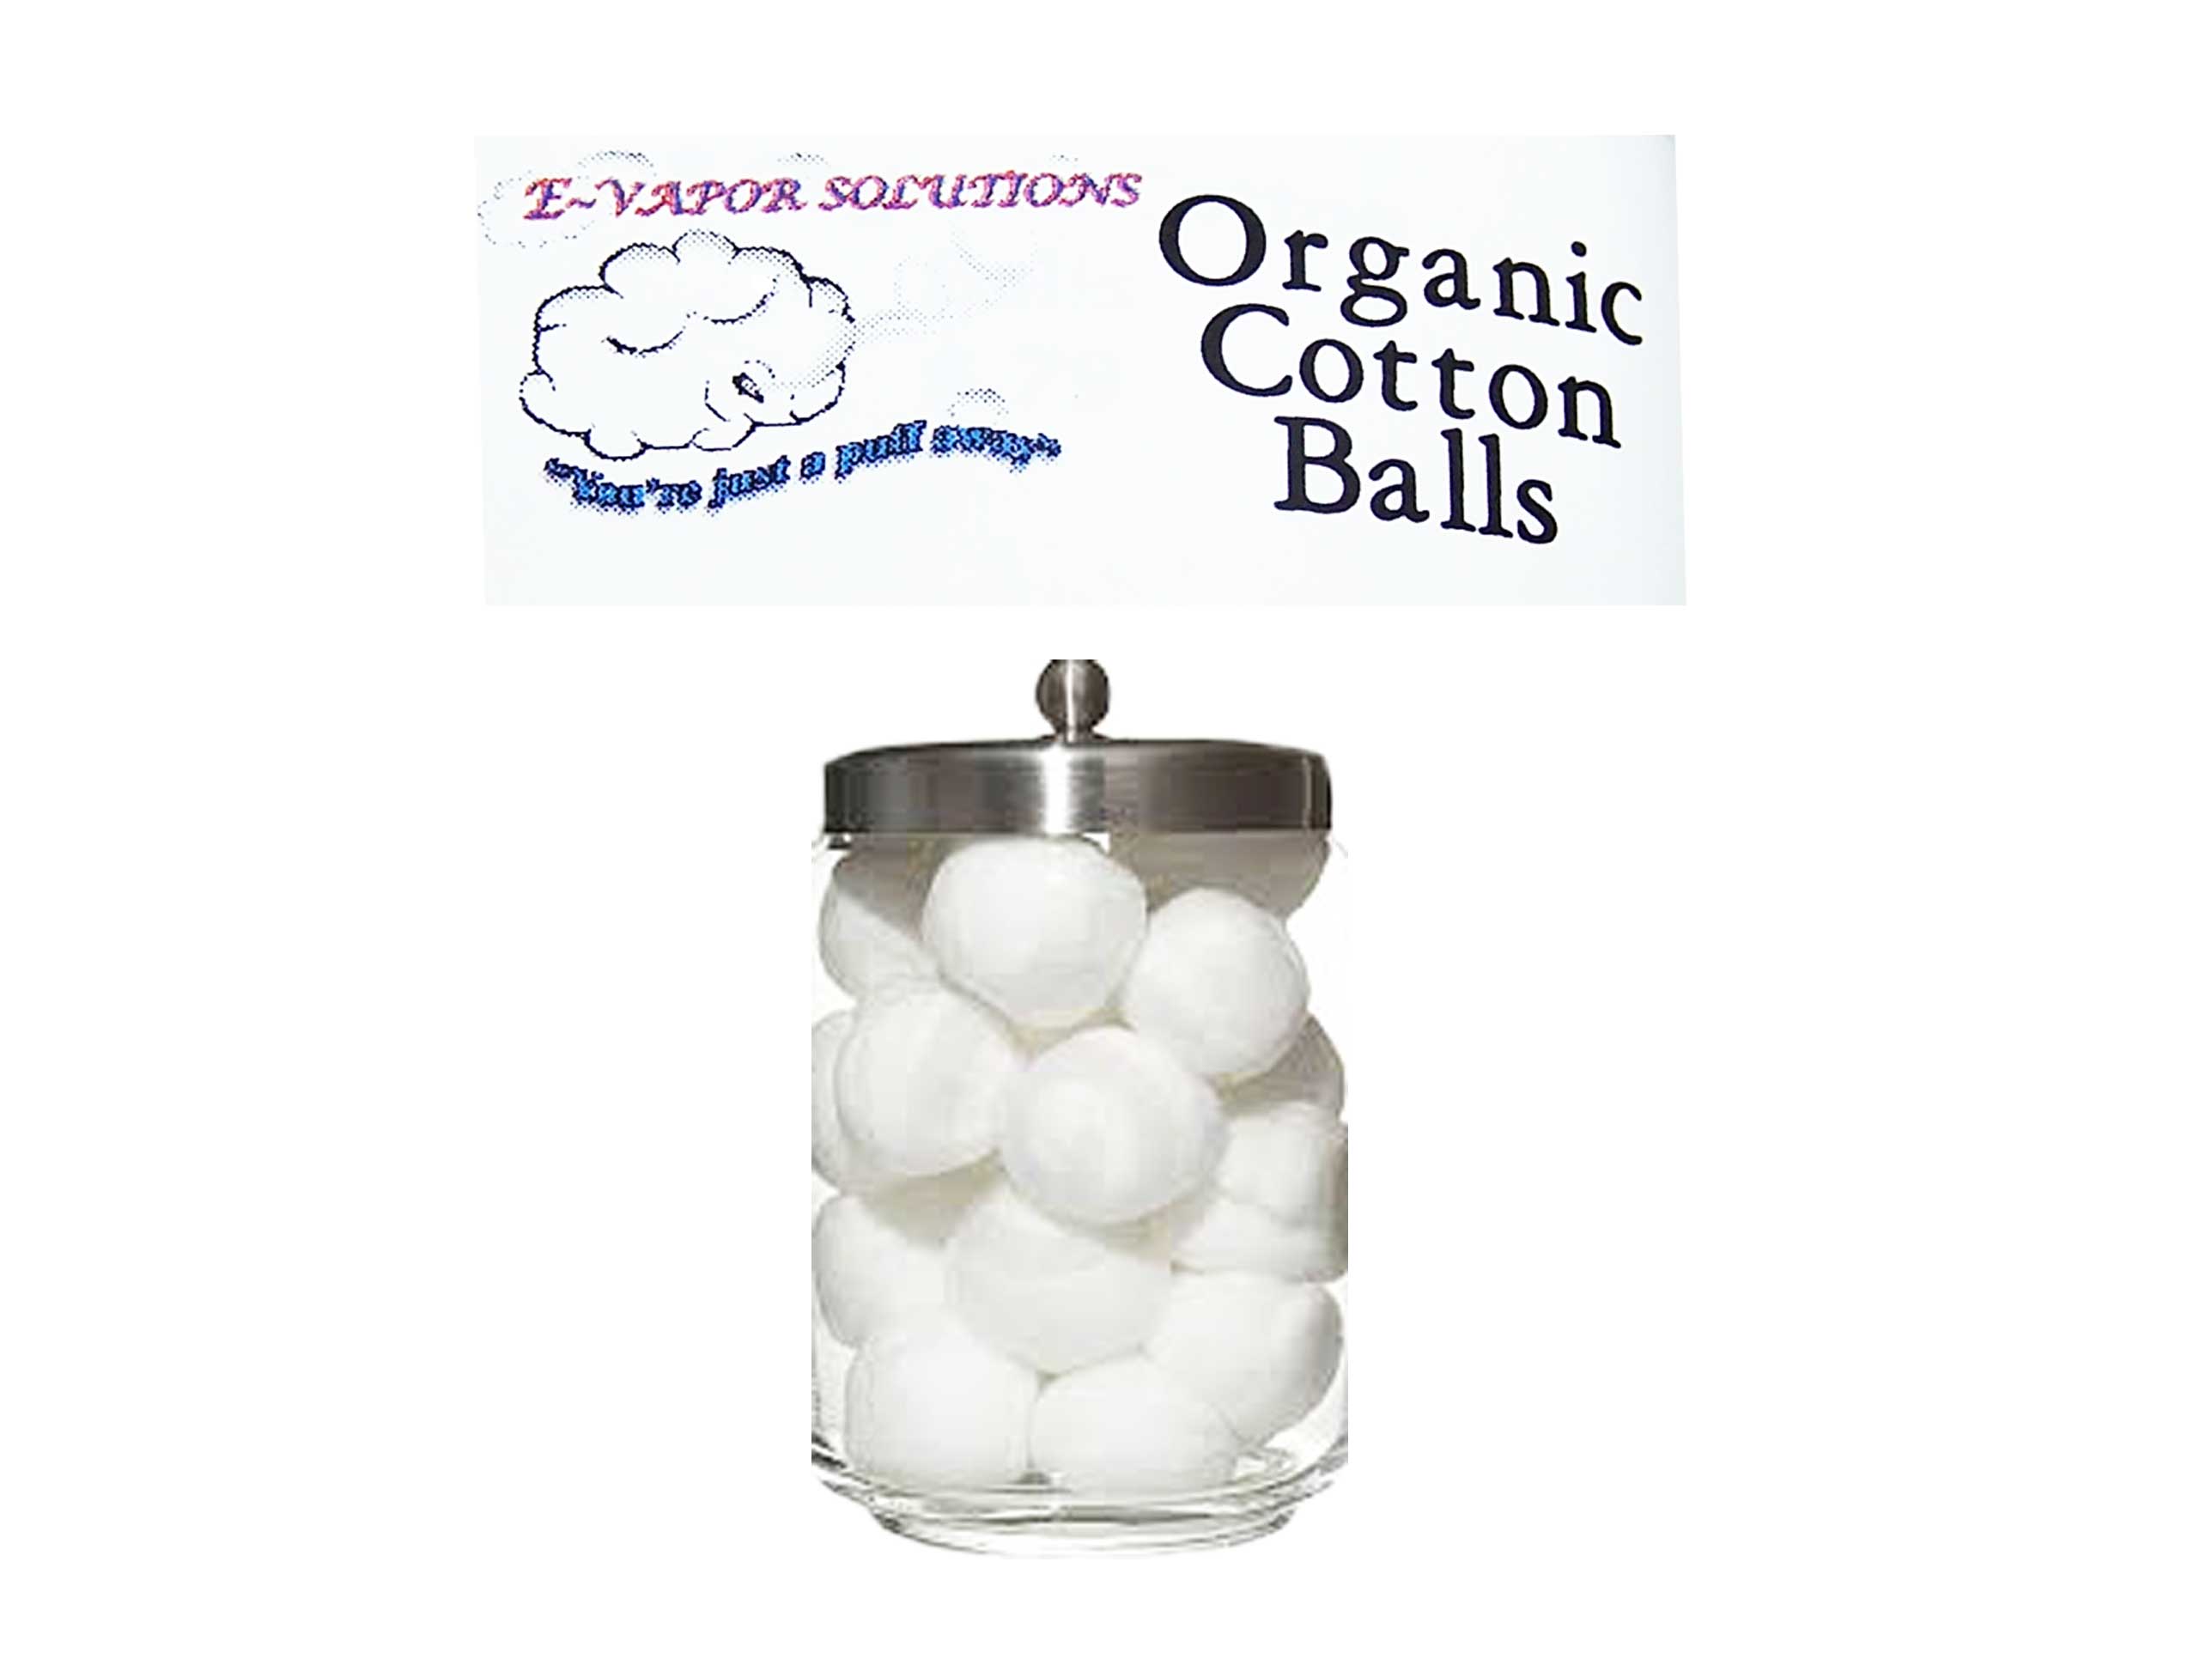 organic-cotton-balls-e-vapor-solutions